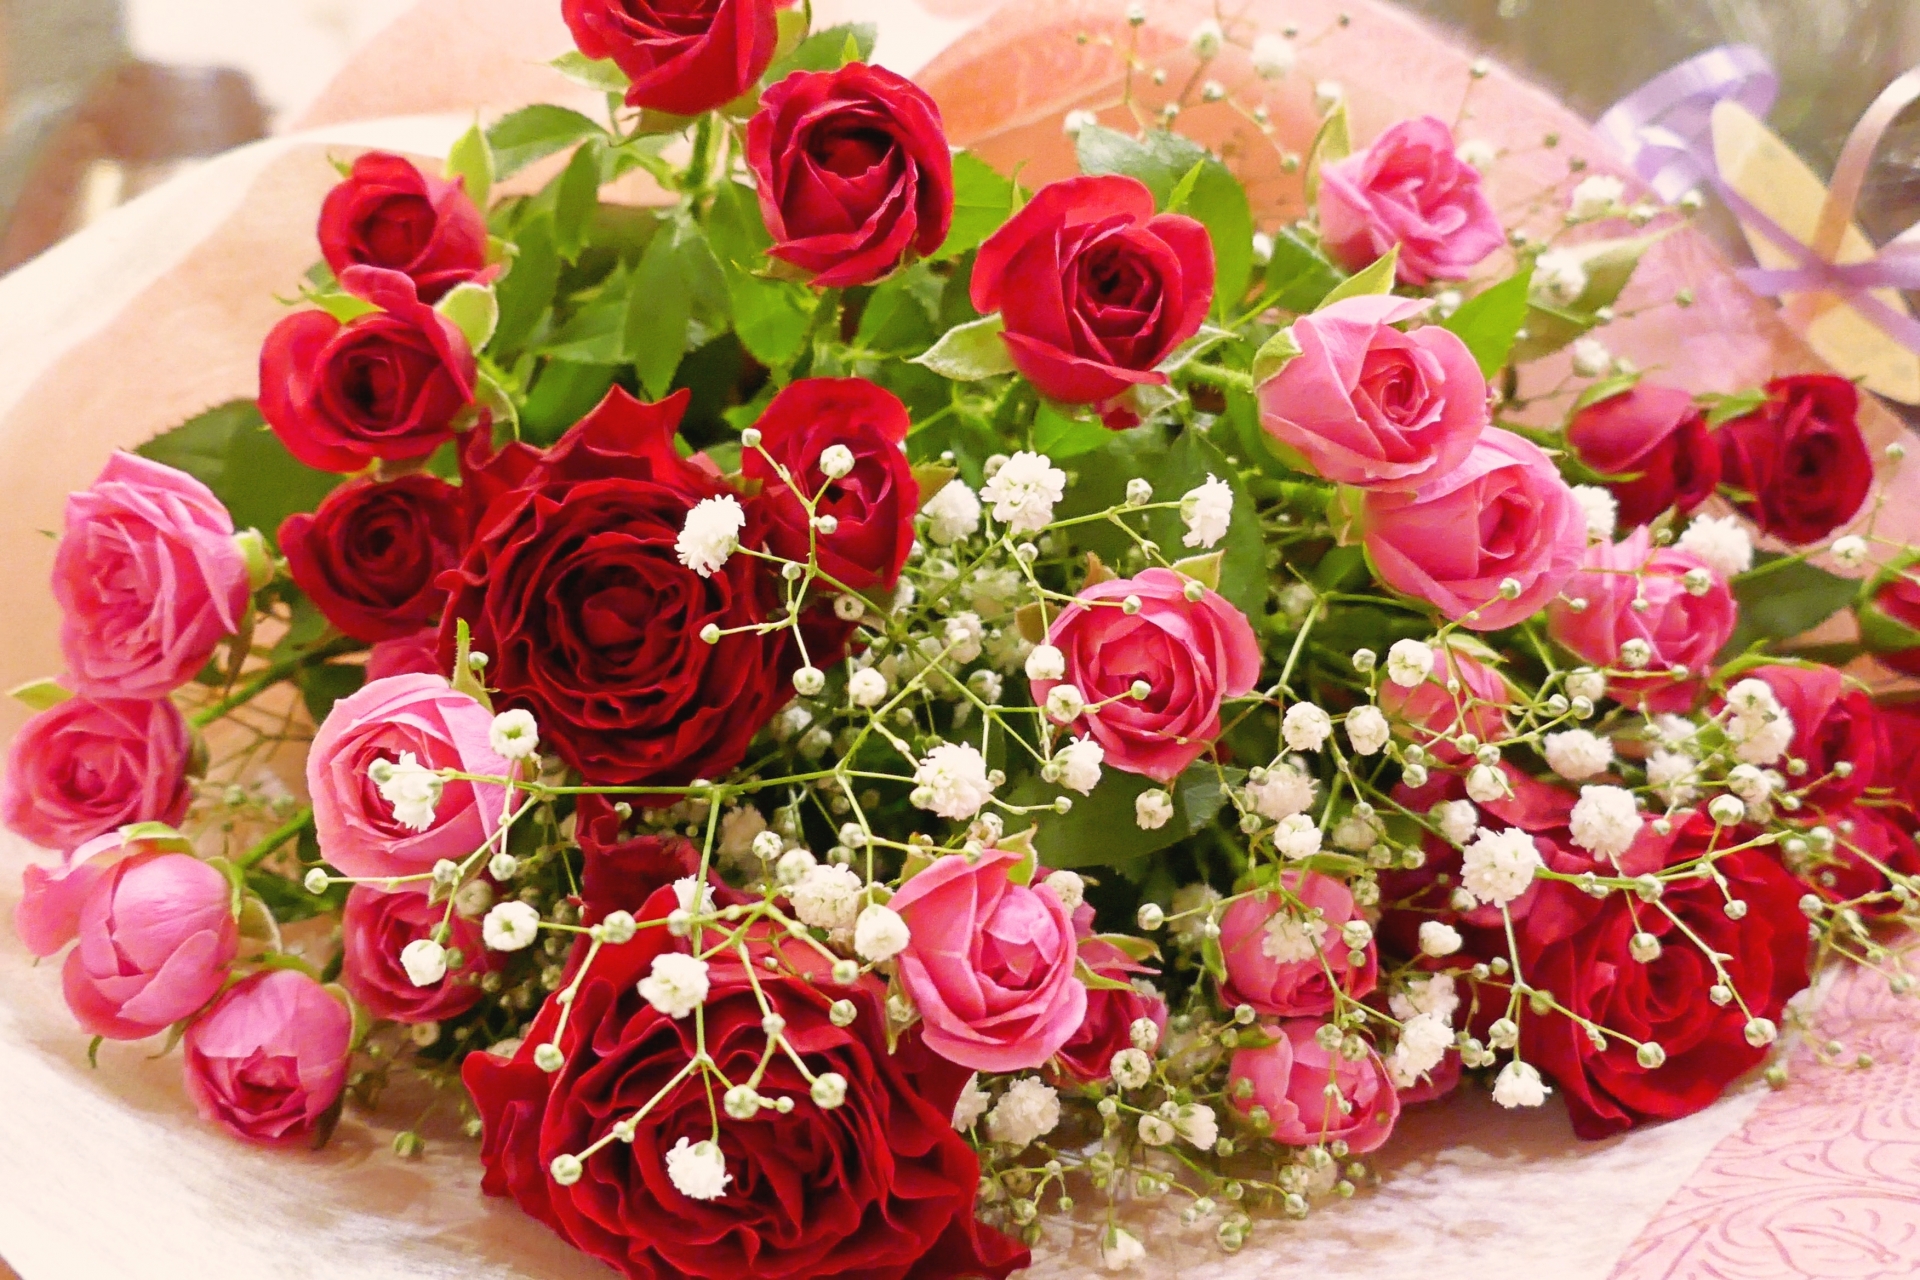 花言葉 誕生日プレゼントに贈る花 おめでとう の意味をもつ花まとめ Monjiroblog